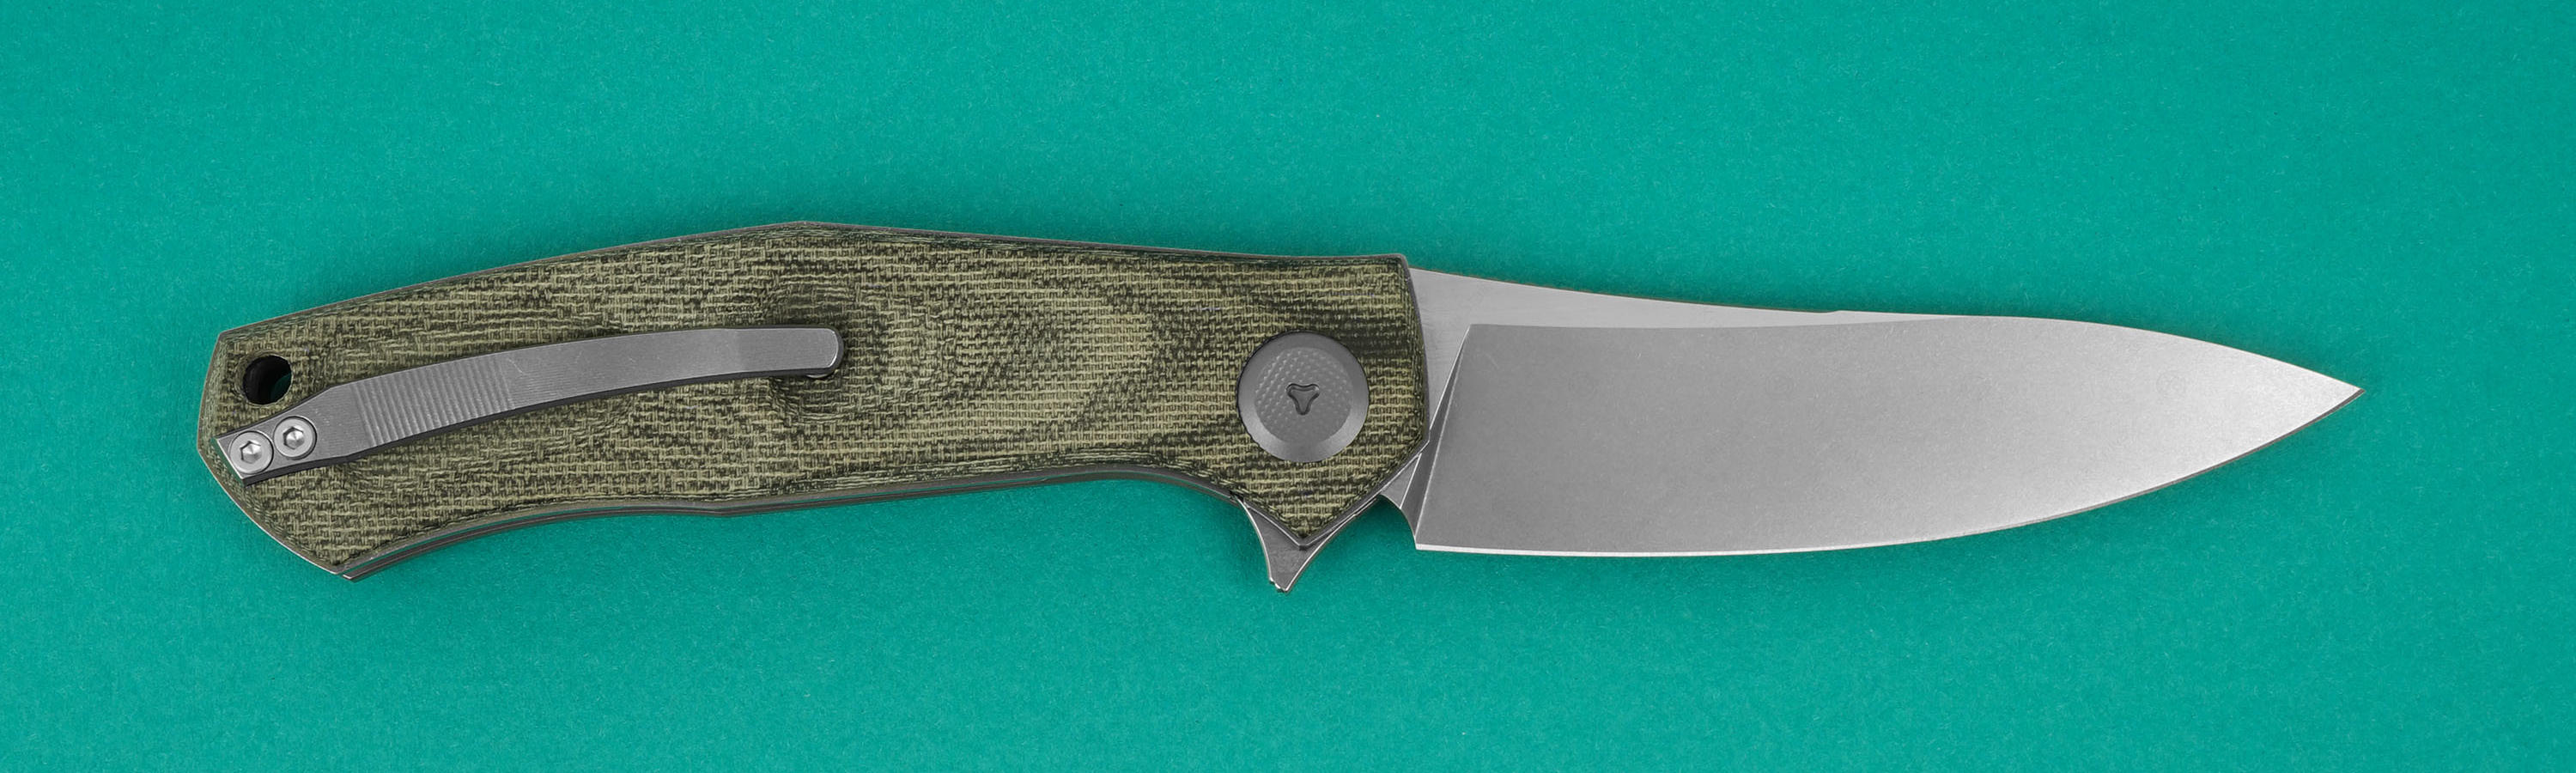 Клинок ножа из M390